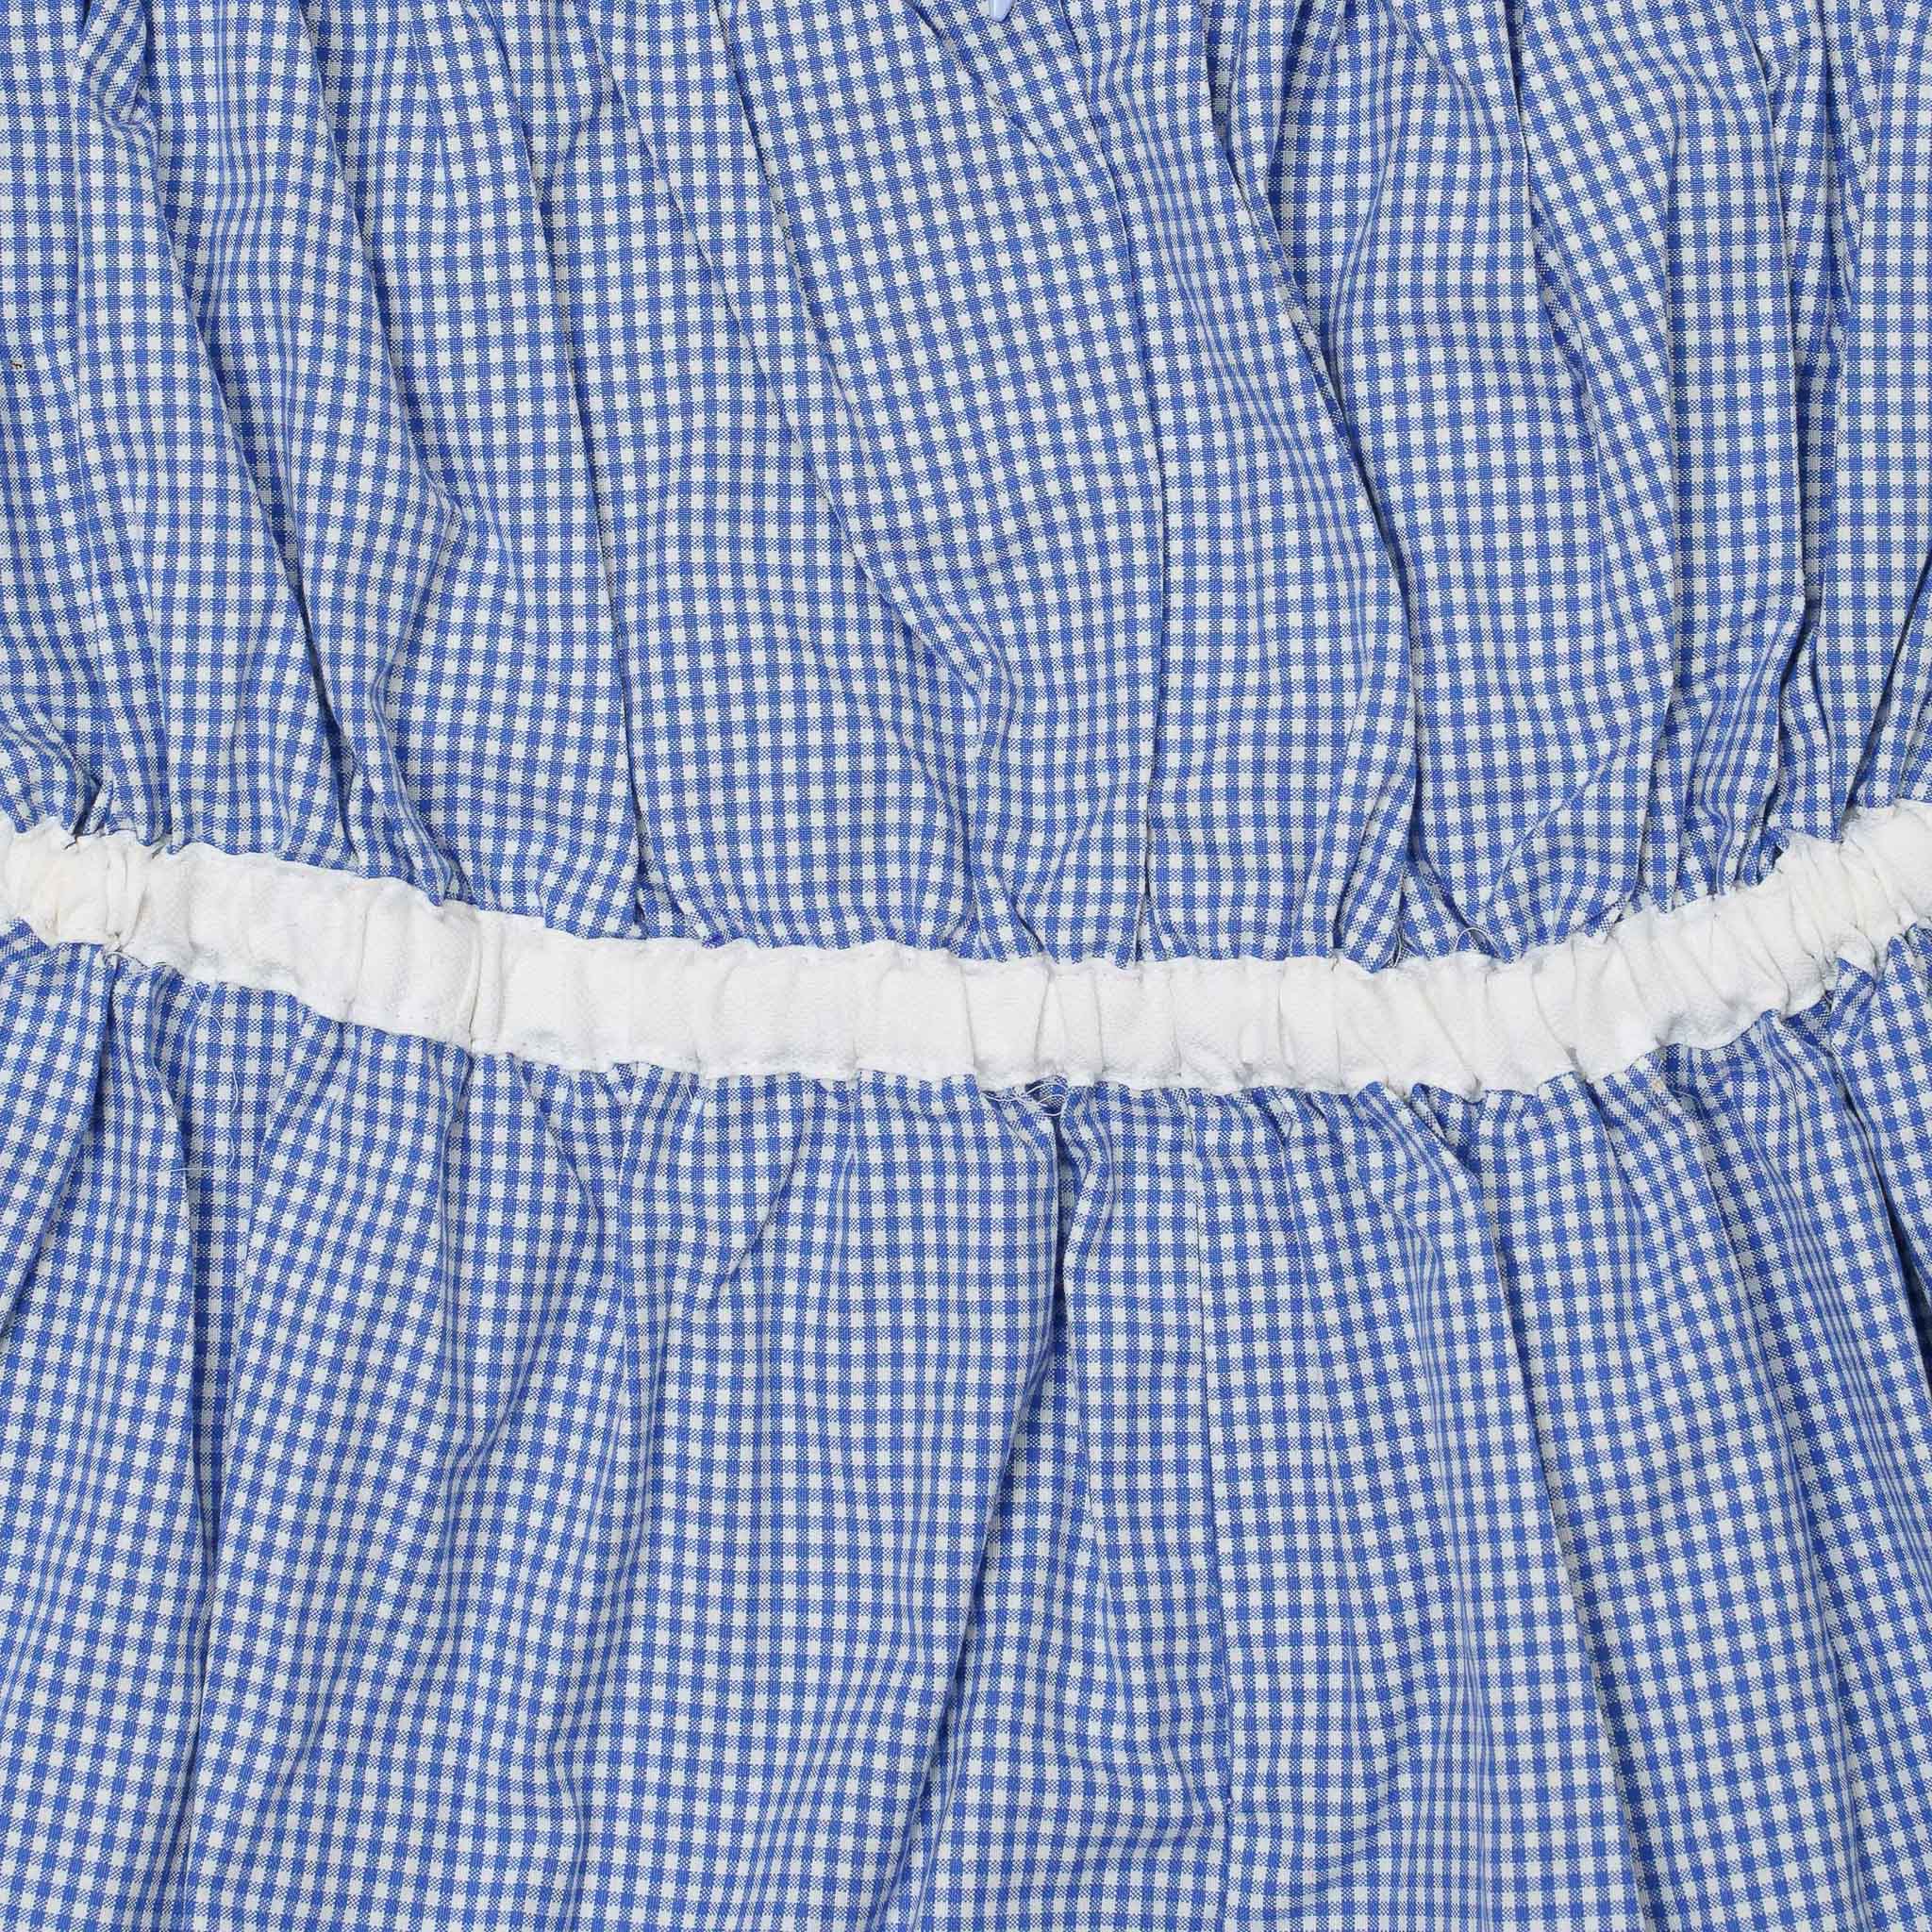 Đầm Bé Gái Kika Caro Xanh Viền Ngực Trắng K103 - Size